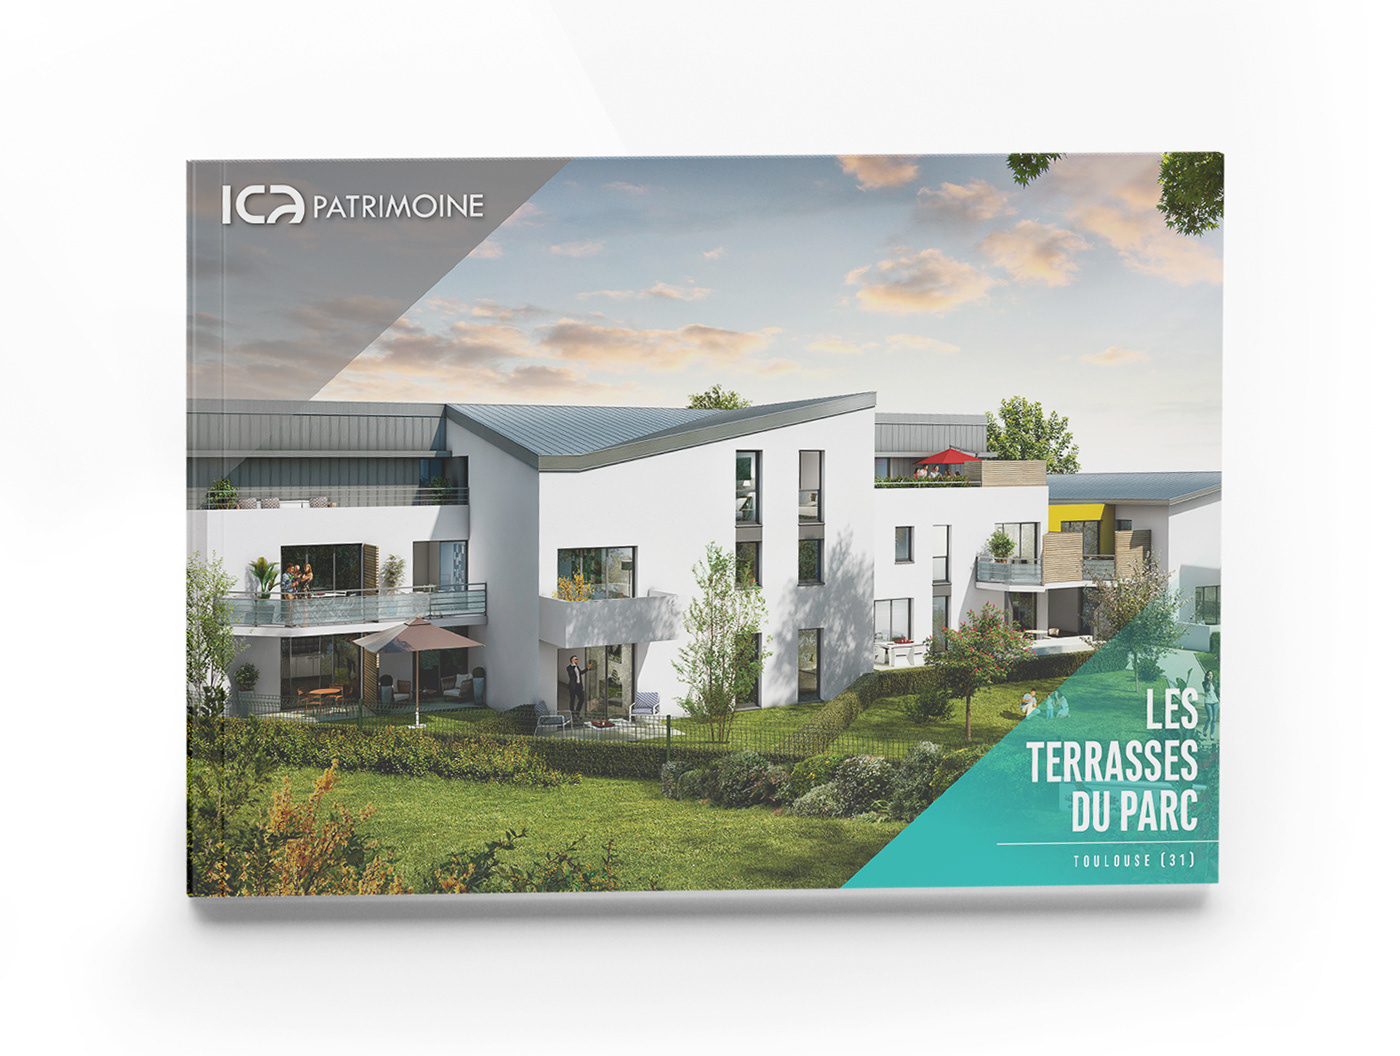 brochure plaquette immobilier maquette mise en page graphisme edition patrimoine immobilier gestion patrimoine ica patrimoine